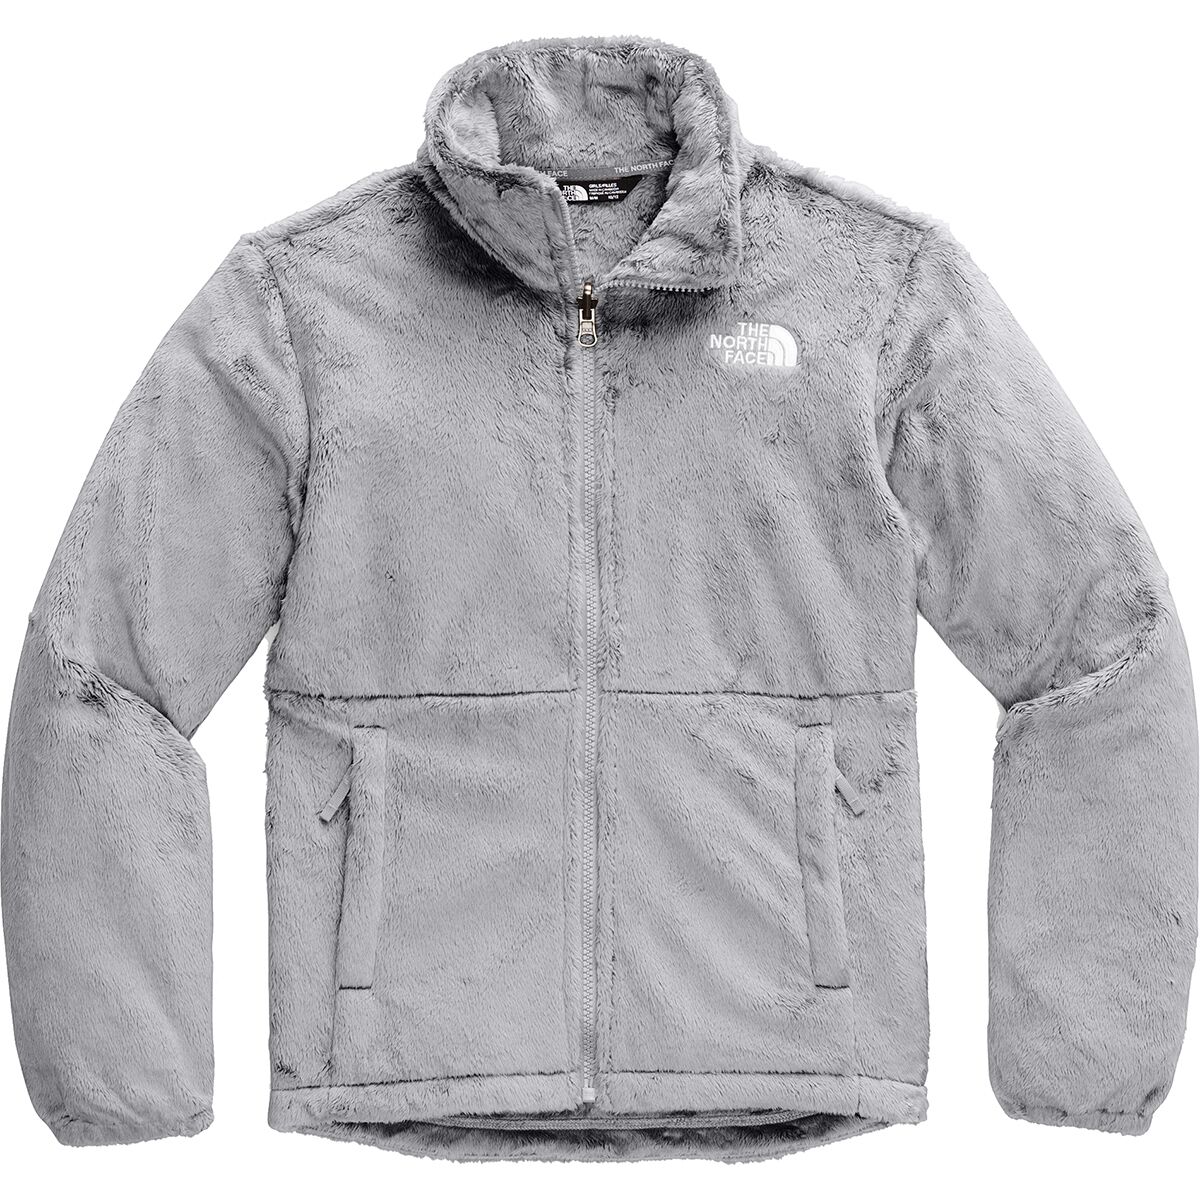 osolita fleece jacket